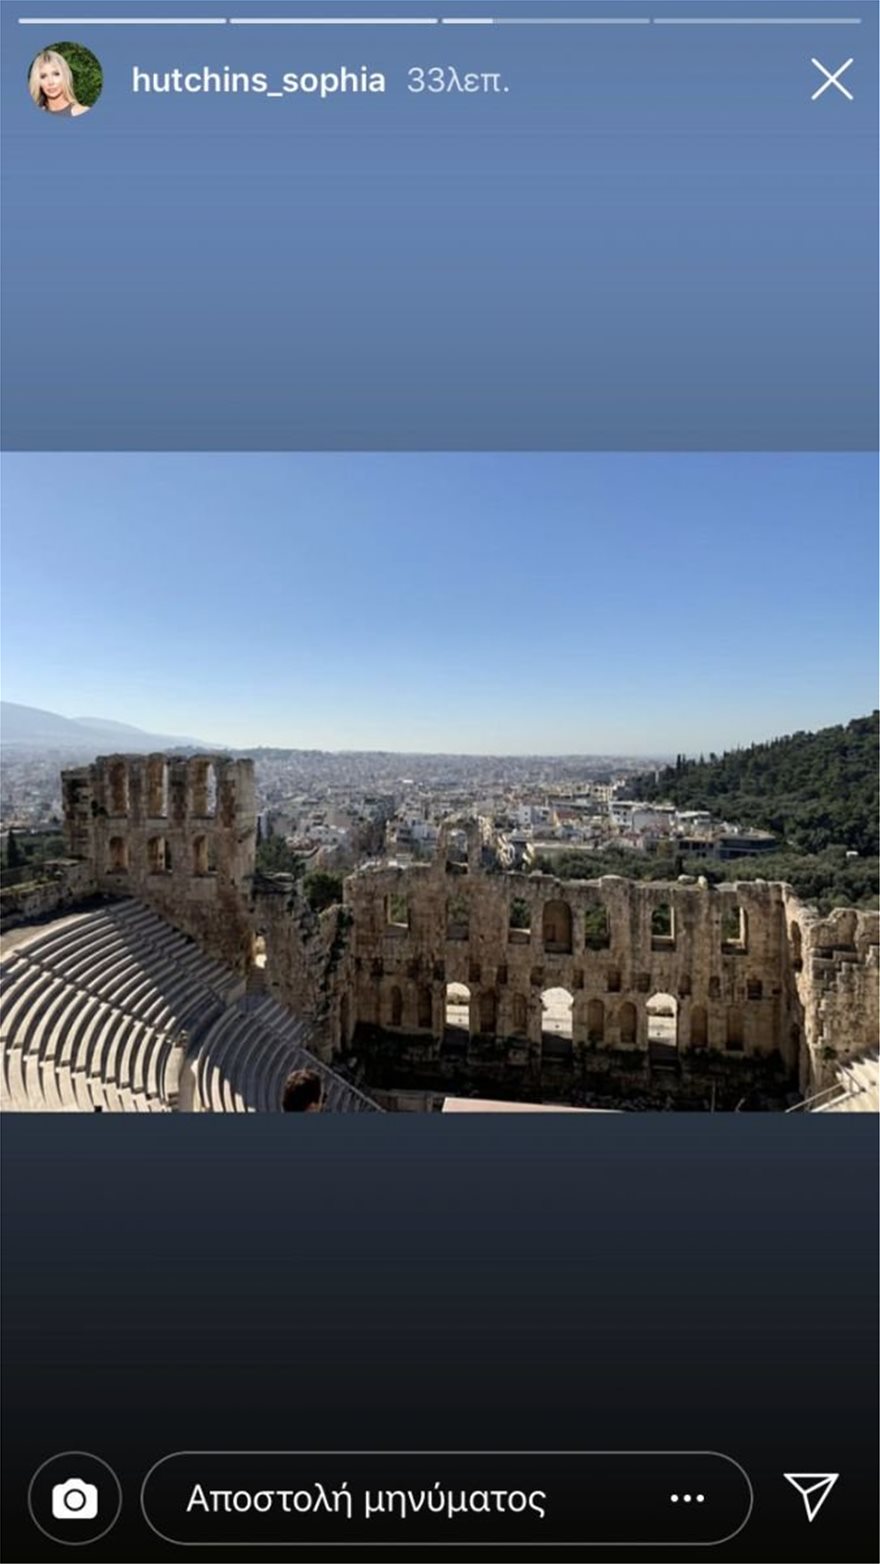 Sophia_Acropolis1